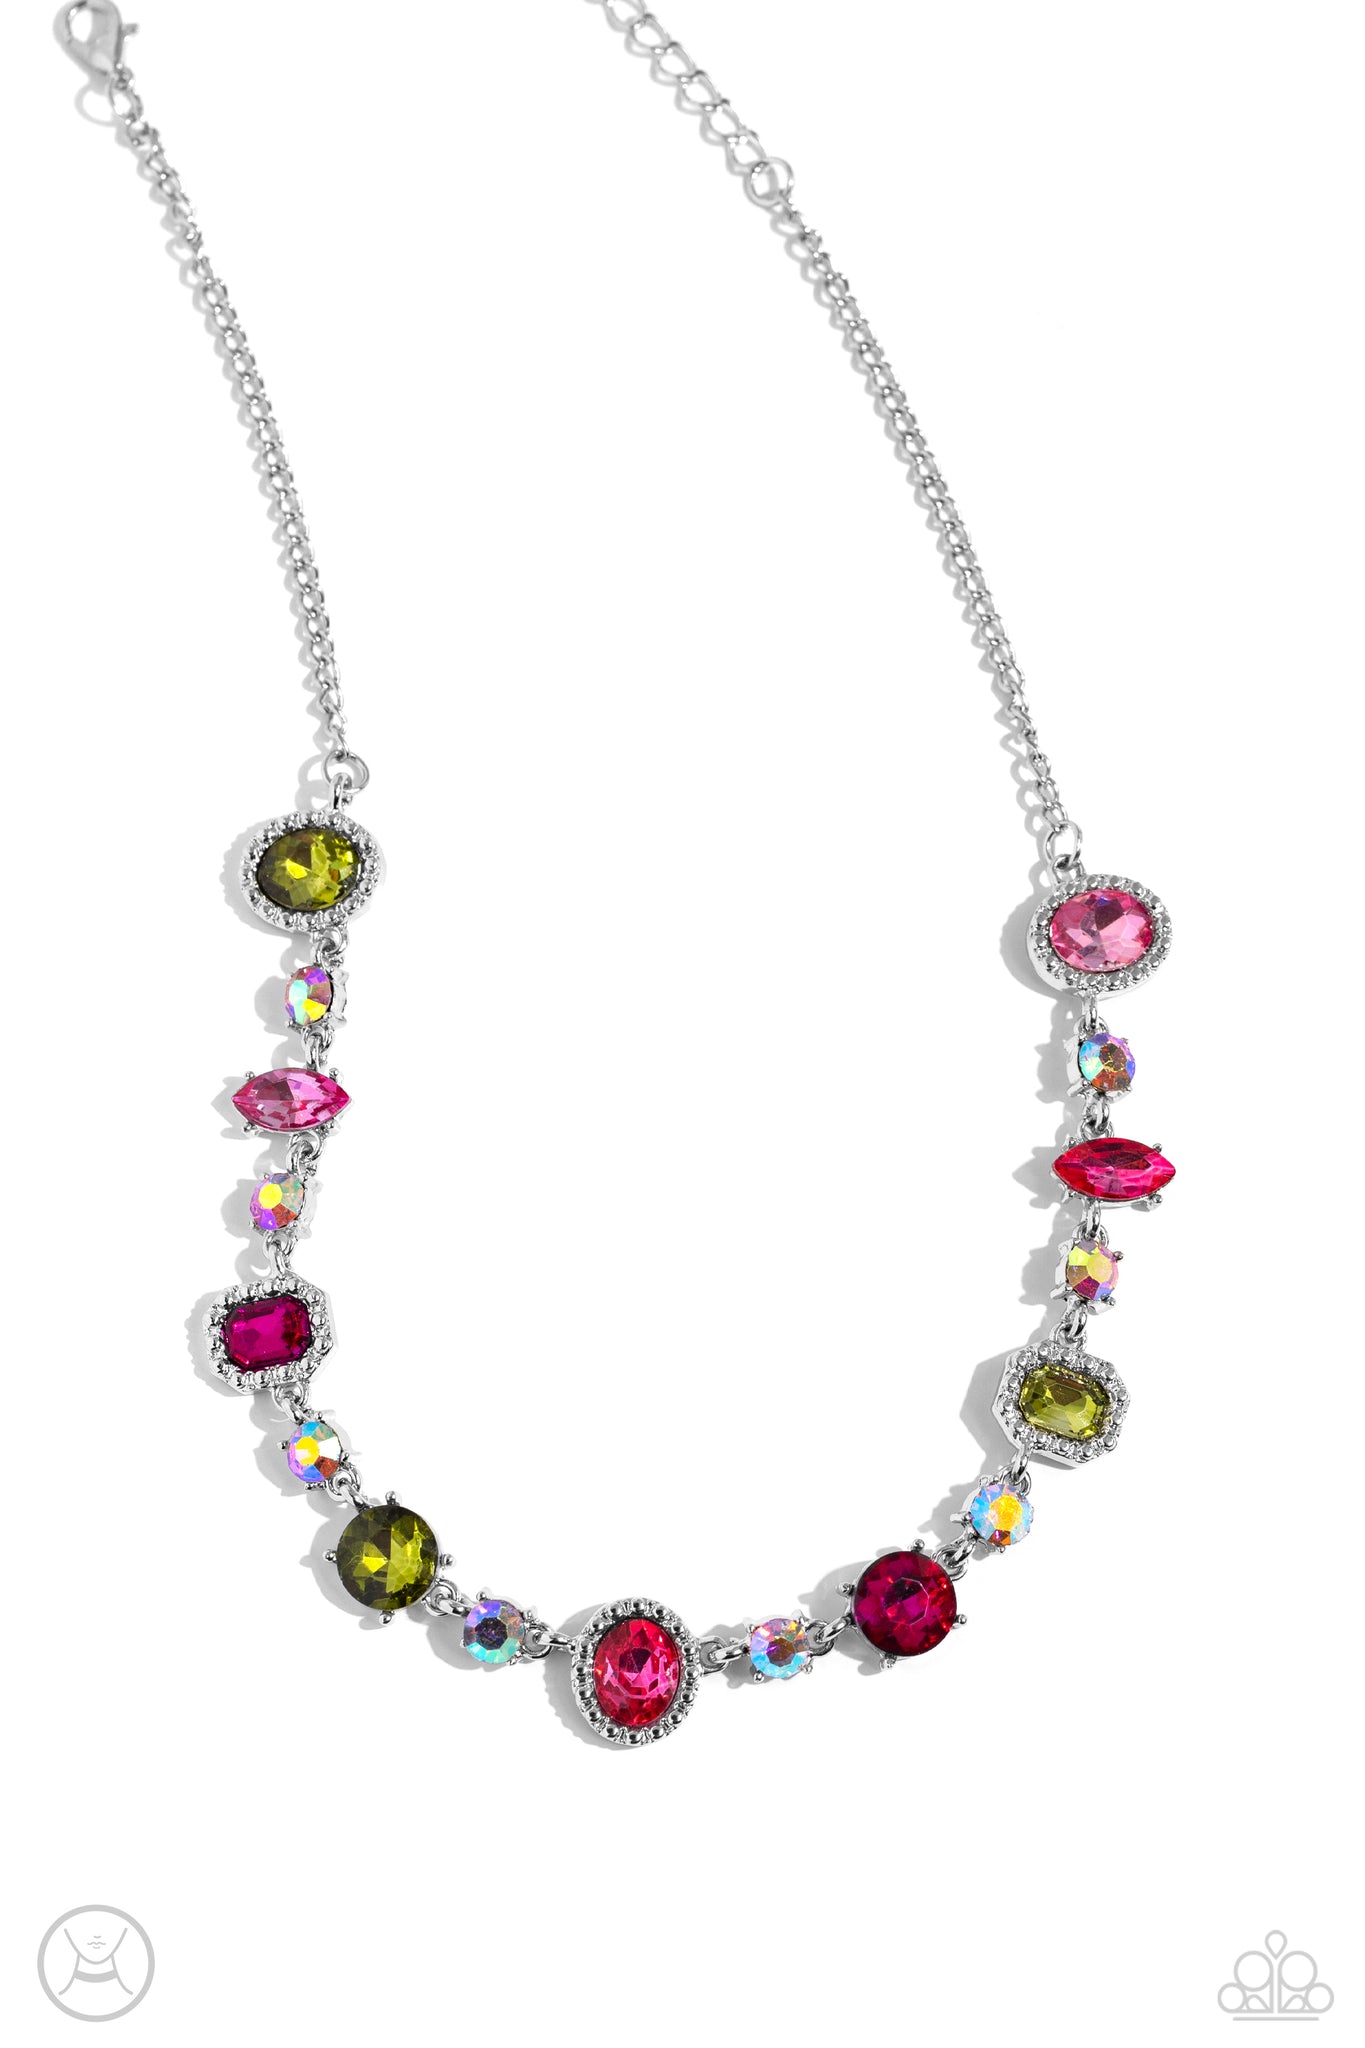 Paparazzi Black Diamond Fan Favorite Oil Spill Necklace, Bracelet, And  Earrings | eBay